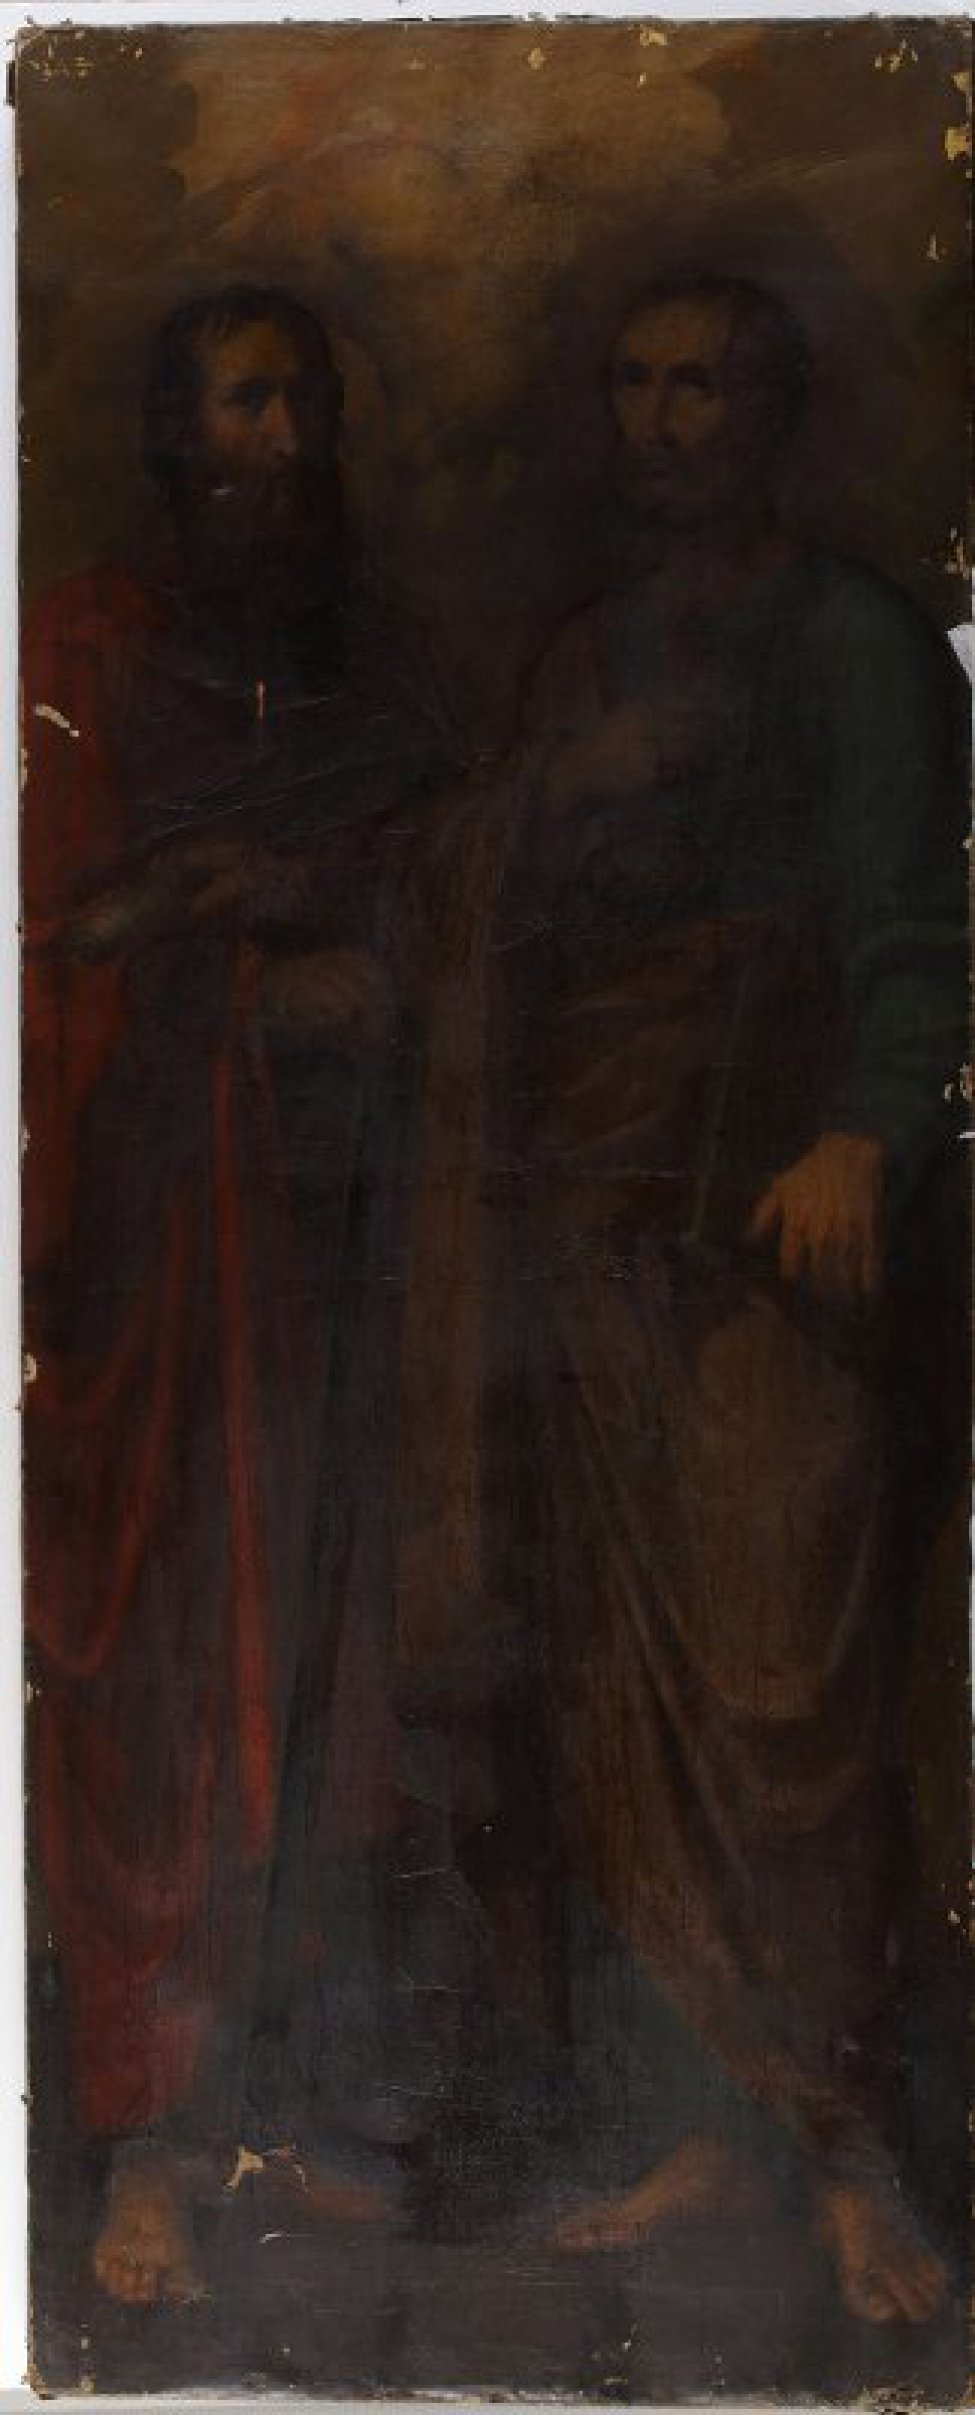 Изображены двое святых: слева - в красной одежде и со свитком в левой руке, справа - в желтой верхней и зеленой нижней одеждах, с ключом в правой руке и евангелием в левой. Оба с непокрытыми головами, в рост, в полуоборот друг к другу. Фон светло-коричнев